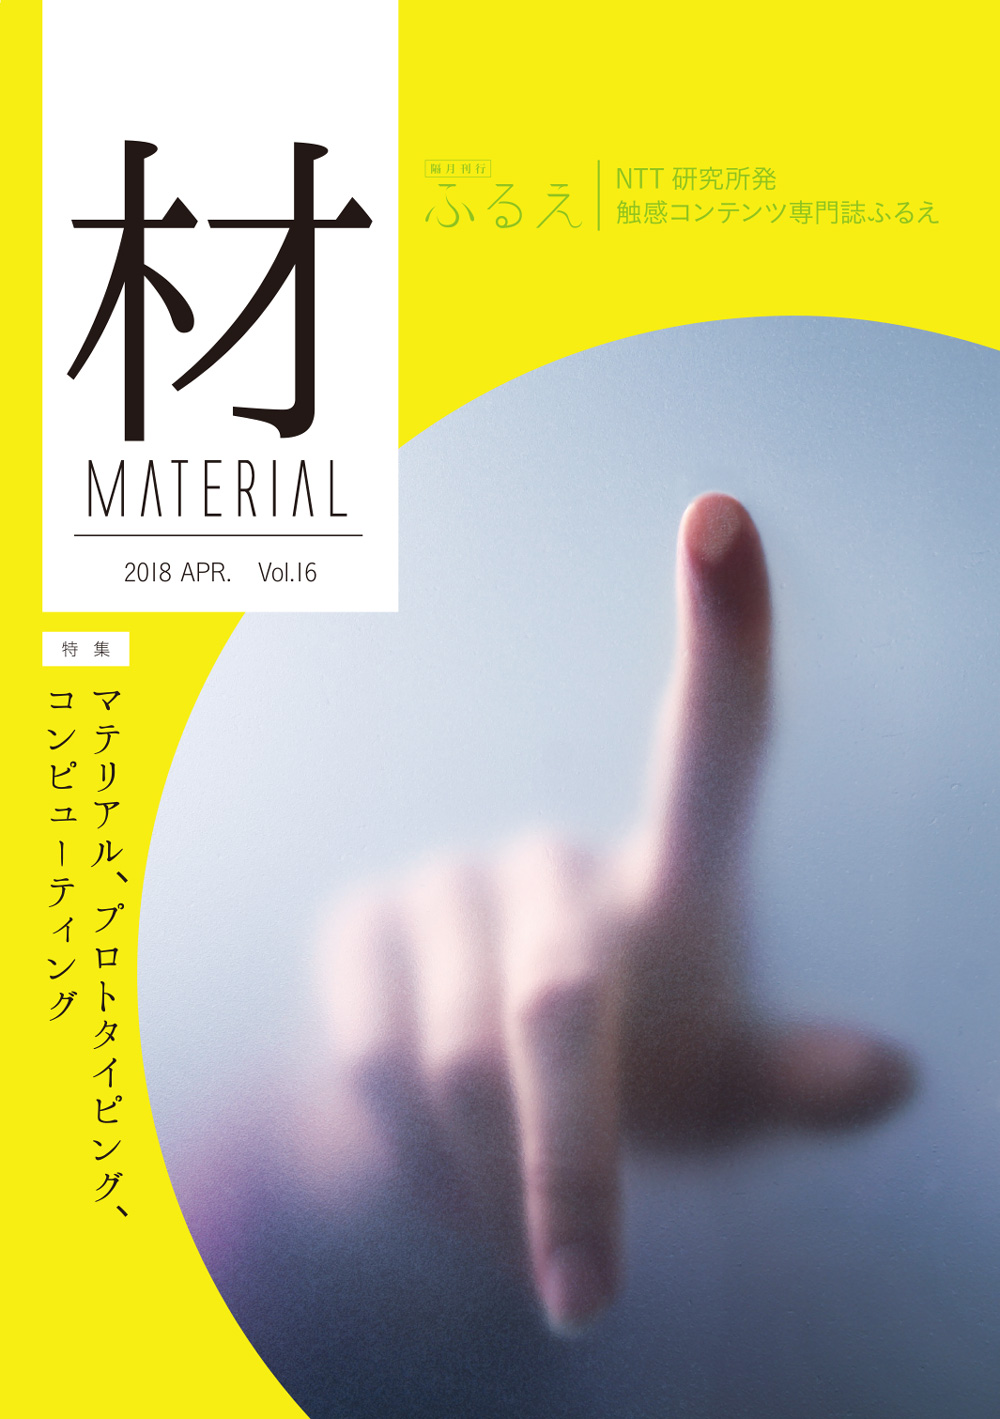 触感コンテンツ専門誌 ふるえ Vol.16 材 MATERIAL